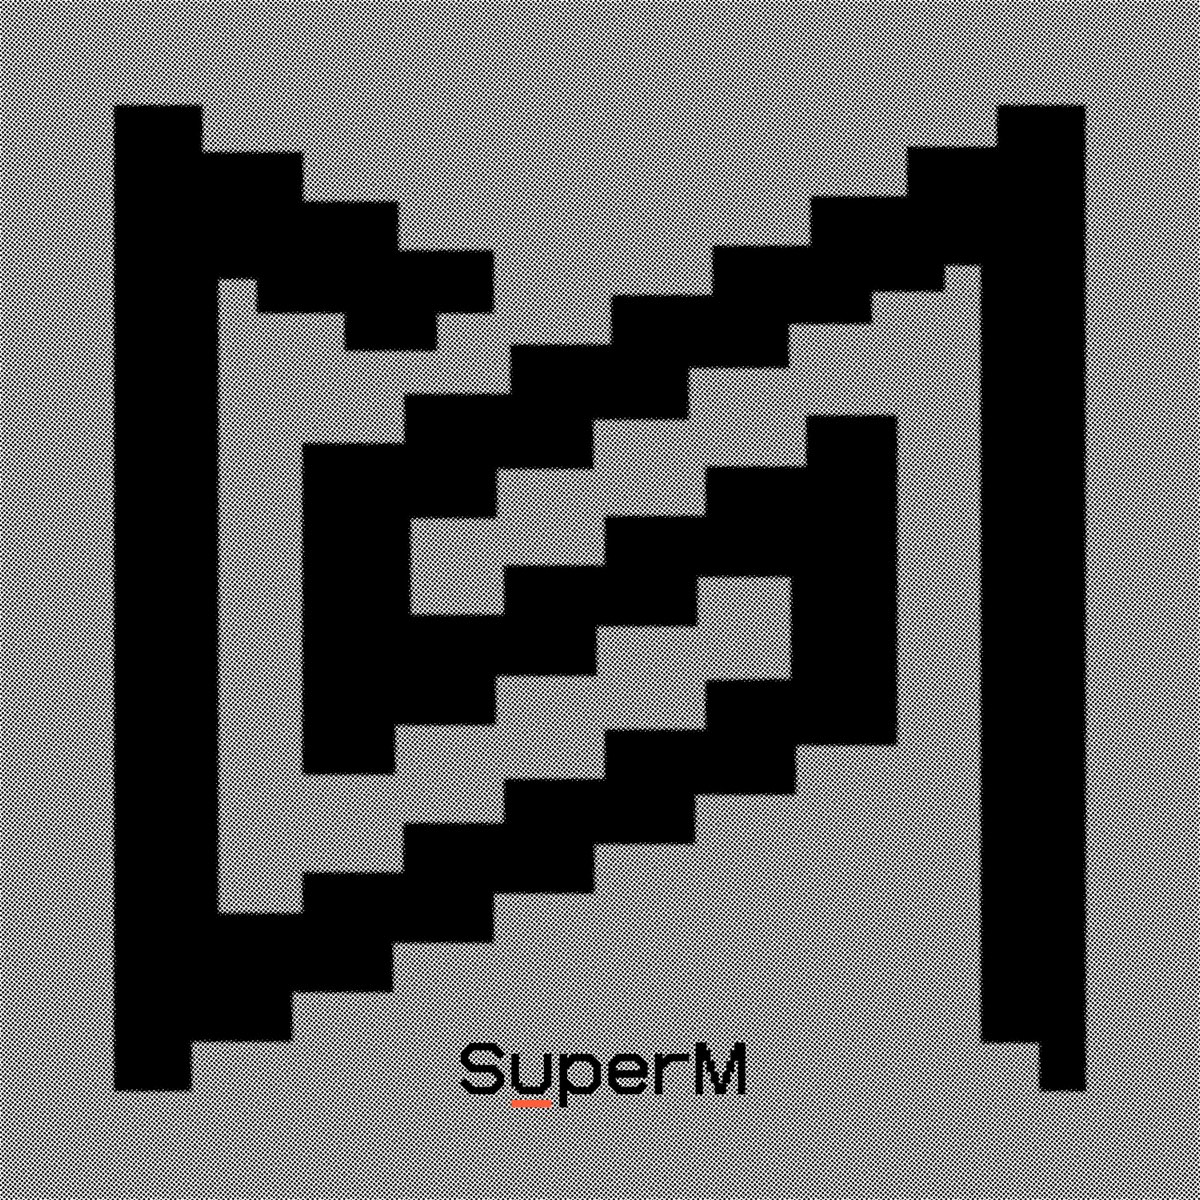 SuperM — Super One cover artwork